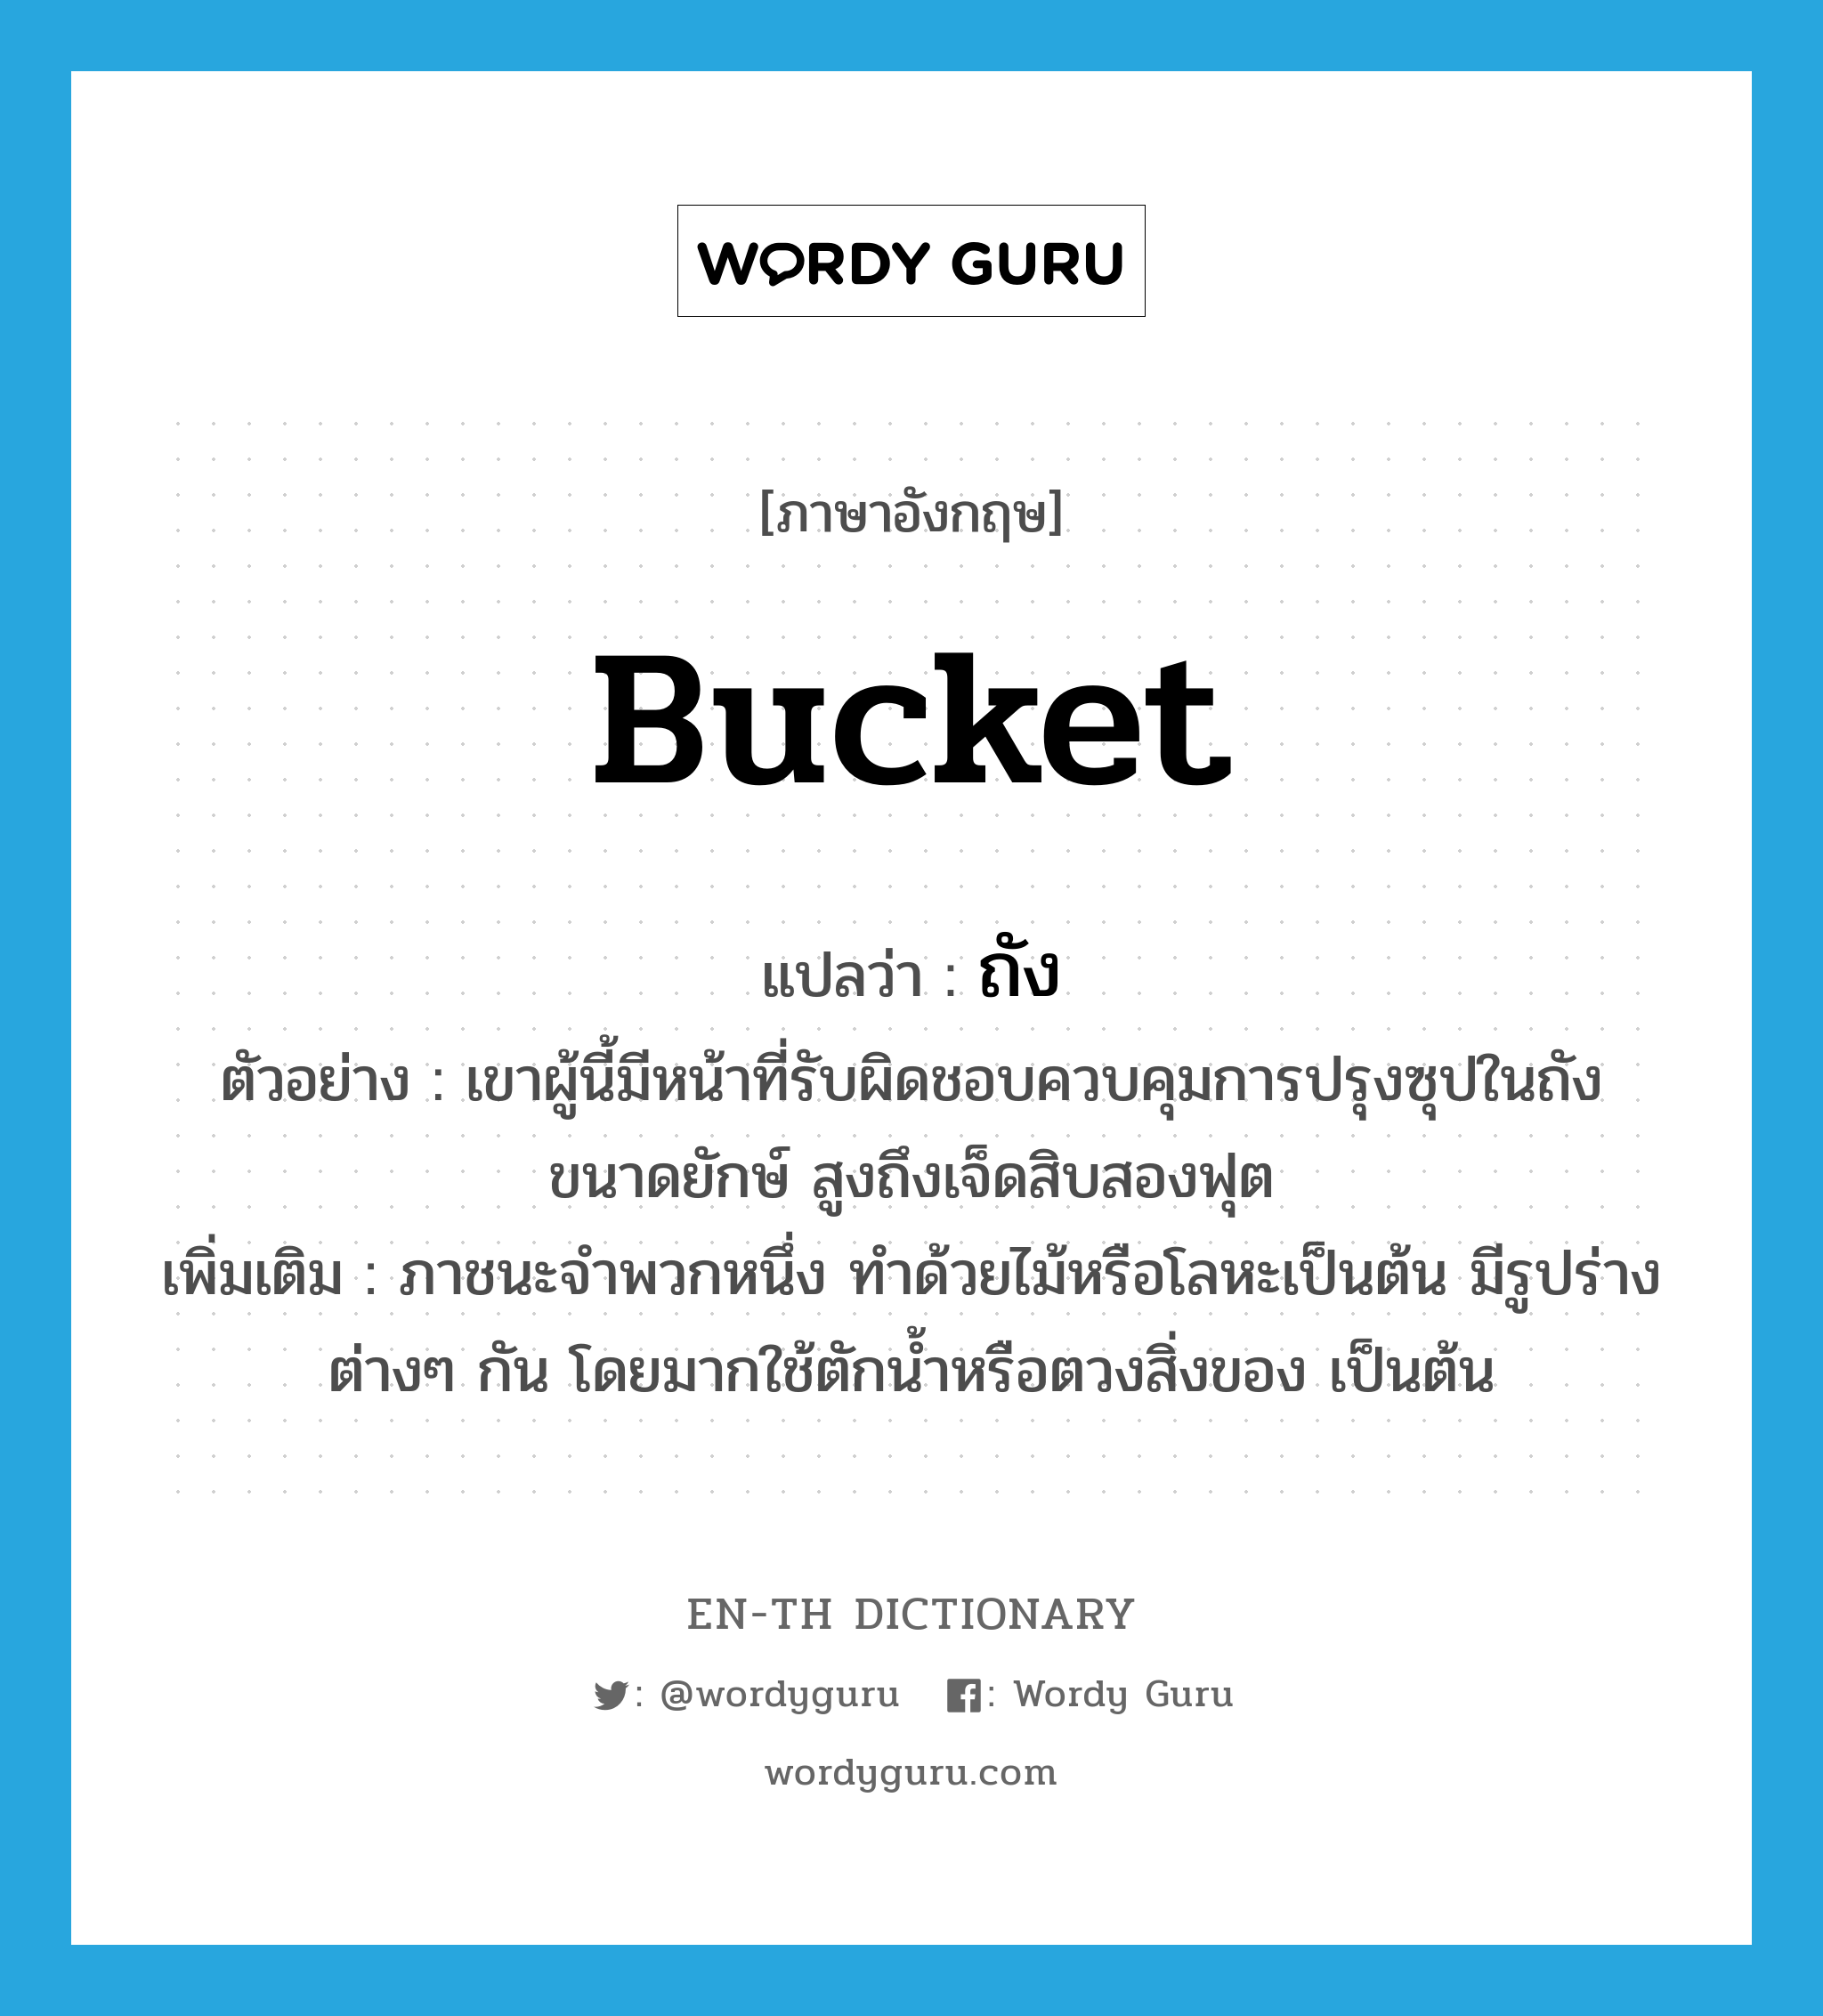 bucket แปลว่า?, คำศัพท์ภาษาอังกฤษ bucket แปลว่า ถัง ประเภท N ตัวอย่าง เขาผู้นี้มีหน้าที่รับผิดชอบควบคุมการปรุงซุปในถังขนาดยักษ์ สูงถึงเจ็ดสิบสองฟุต เพิ่มเติม ภาชนะจำพวกหนึ่ง ทำด้วยไม้หรือโลหะเป็นต้น มีรูปร่างต่างๆ กัน โดยมากใช้ตักน้ำหรือตวงสิ่งของ เป็นต้น หมวด N